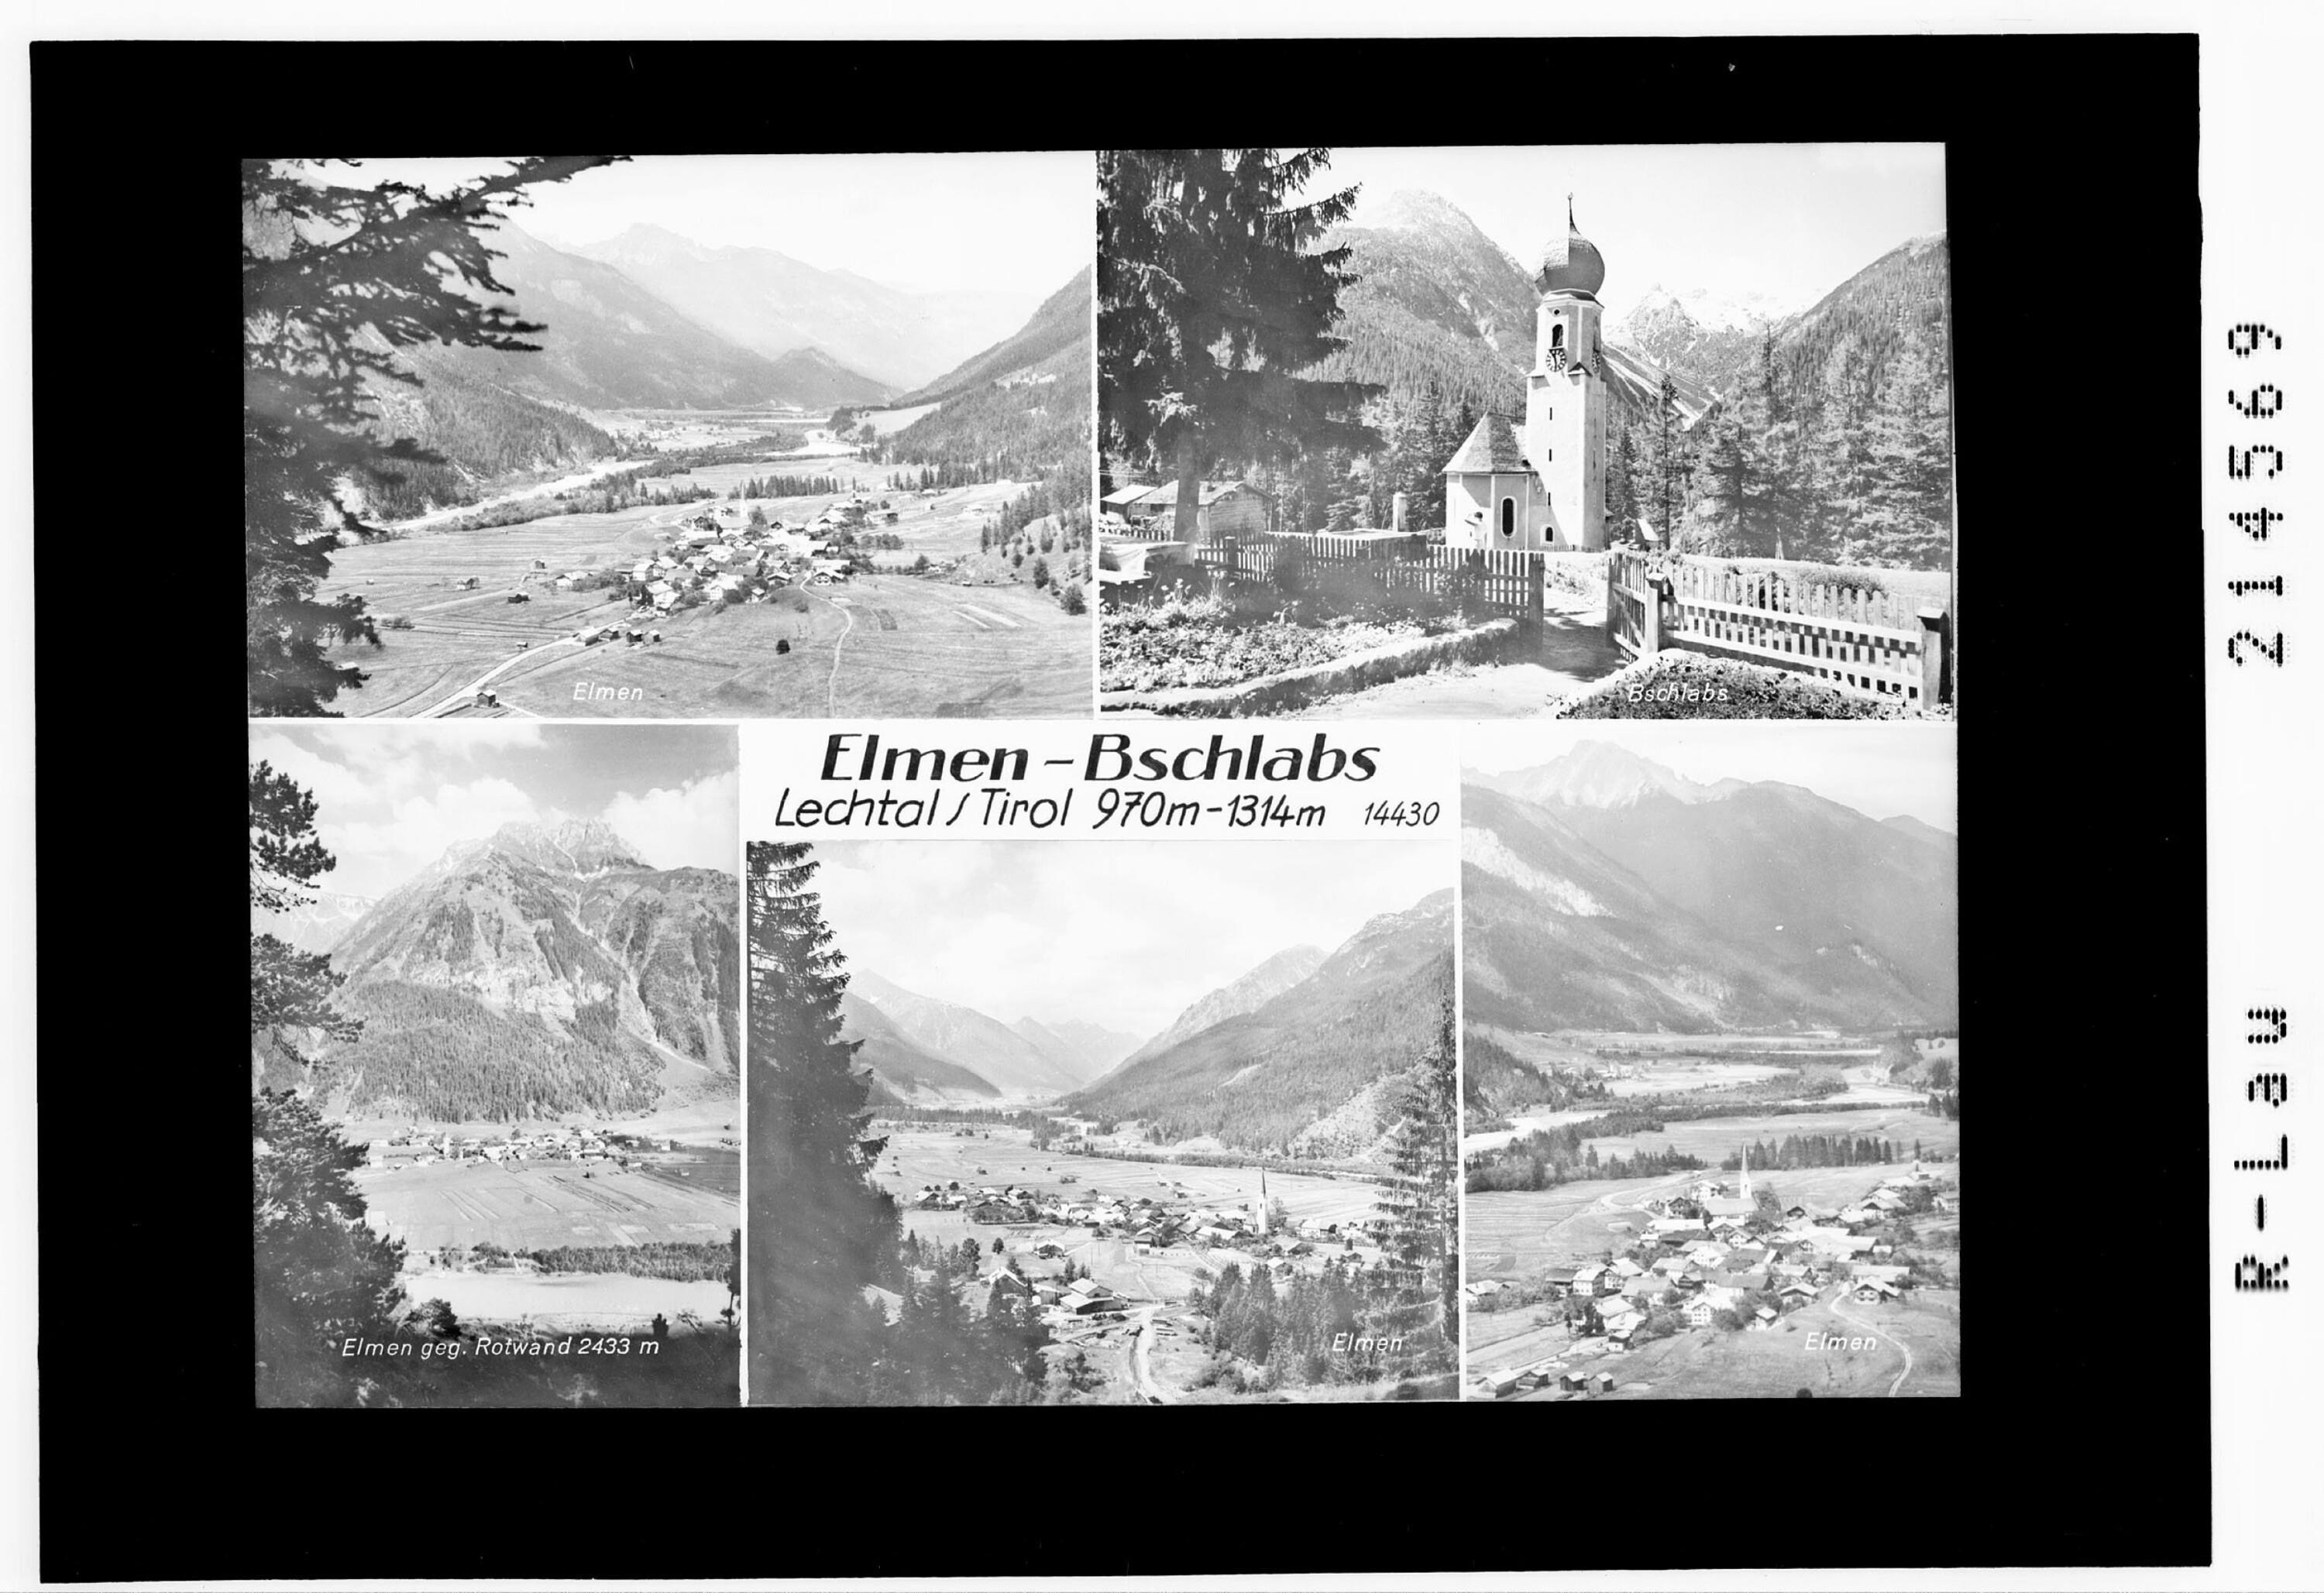 Elmen - Bschlabs Lechtal / Tirol 1970 m - 1314 m></div>


    <hr>
    <div class=